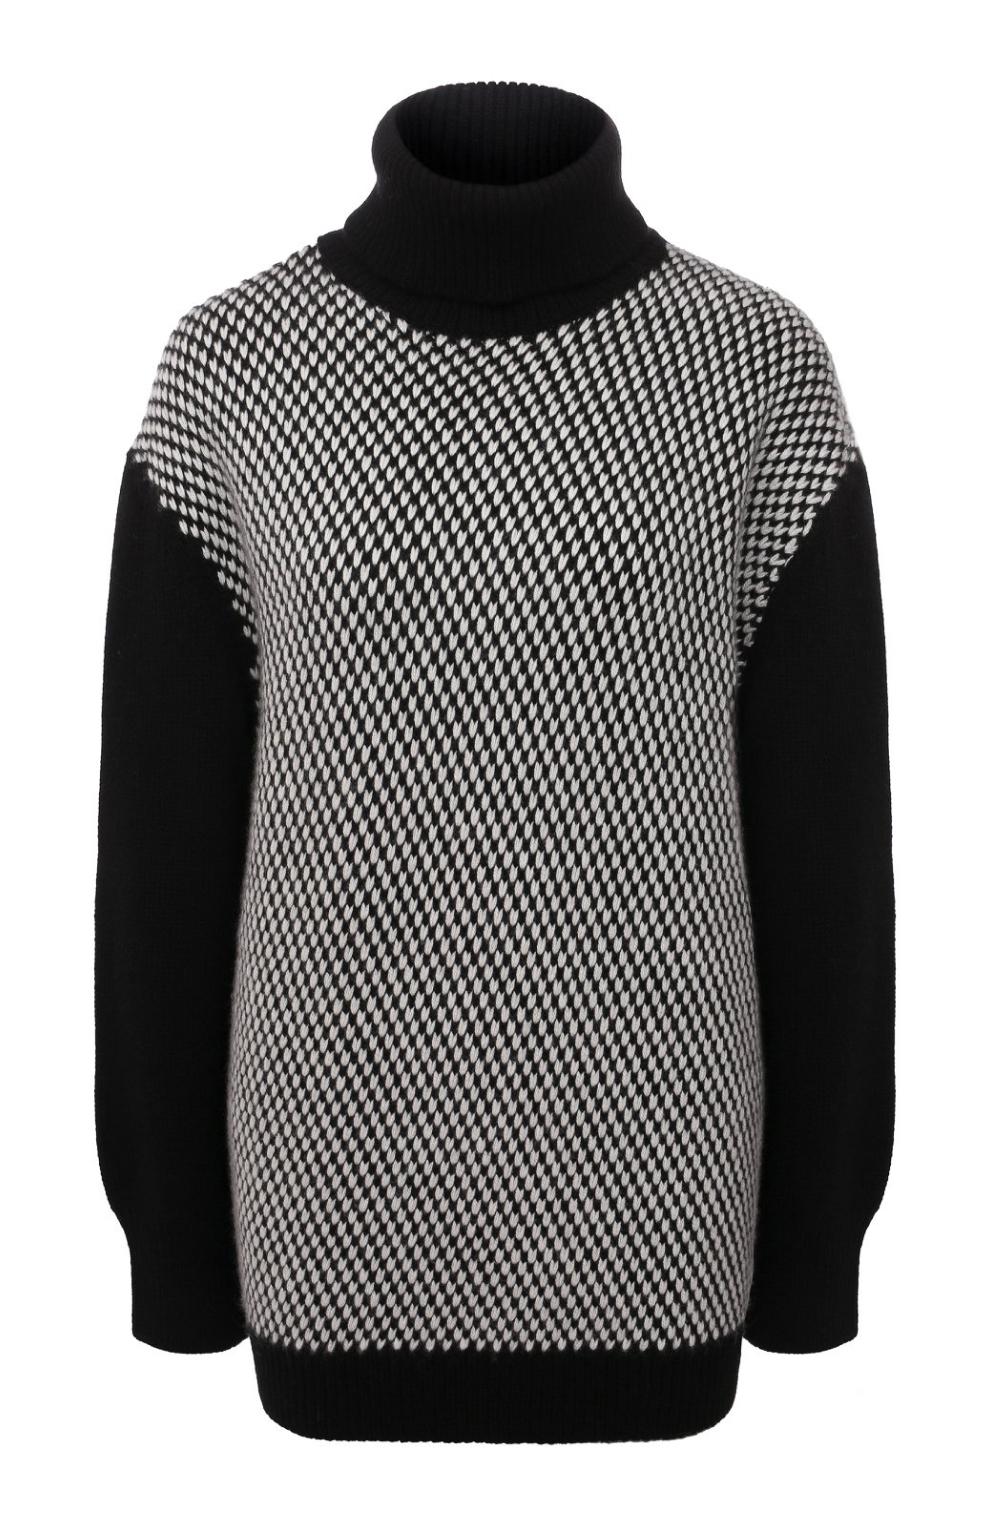 Кашемировый свитер, Kiton, 247 500 руб.